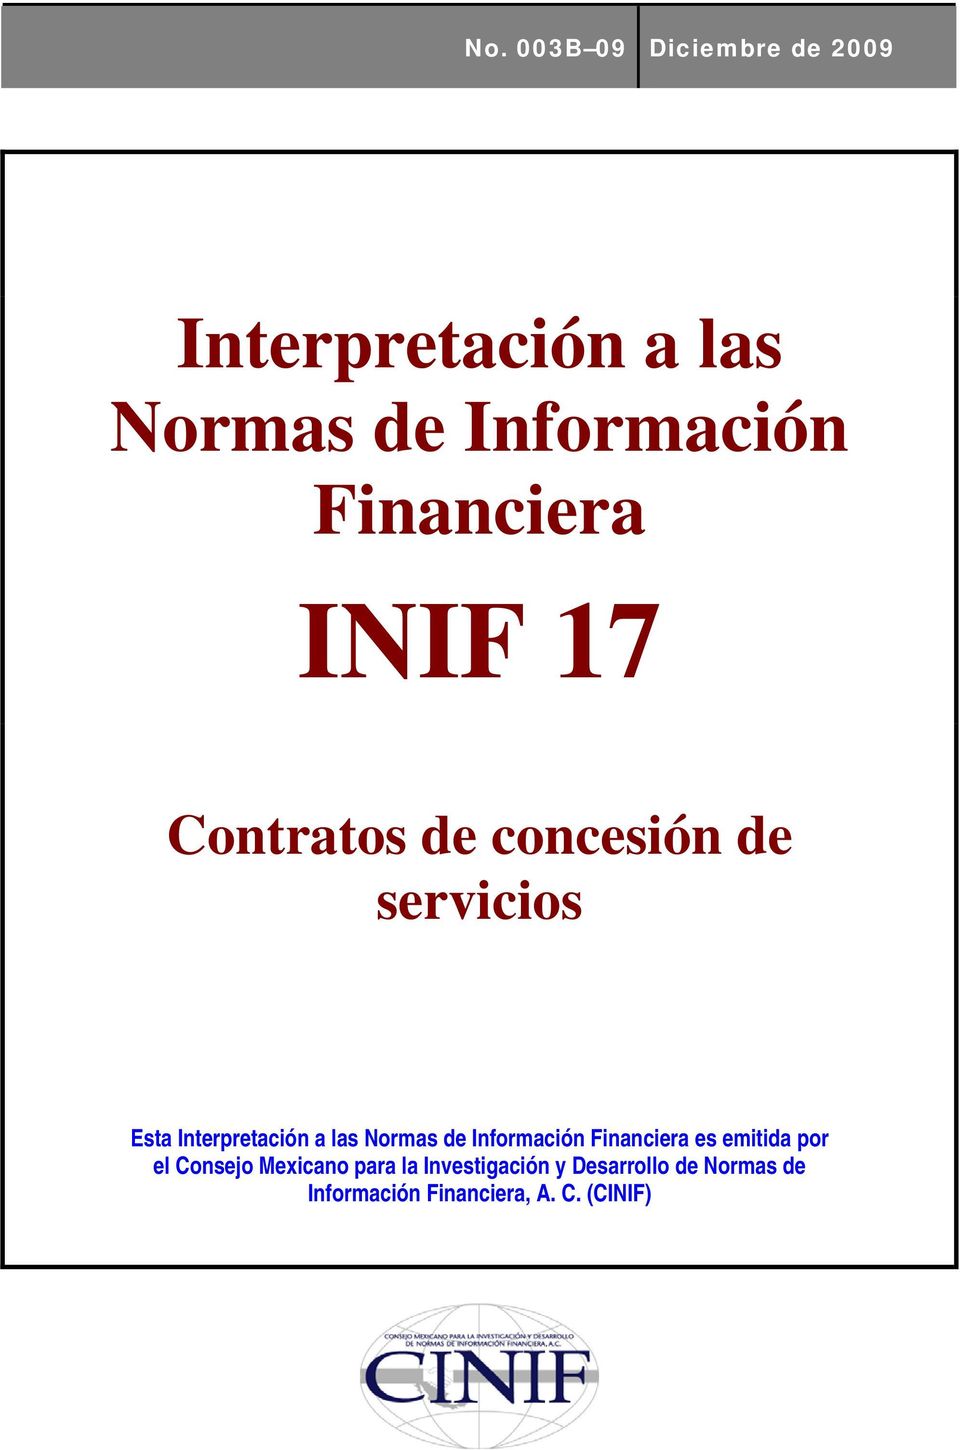 las Normas de Información Financiera es emitida por el Consejo Mexicano para